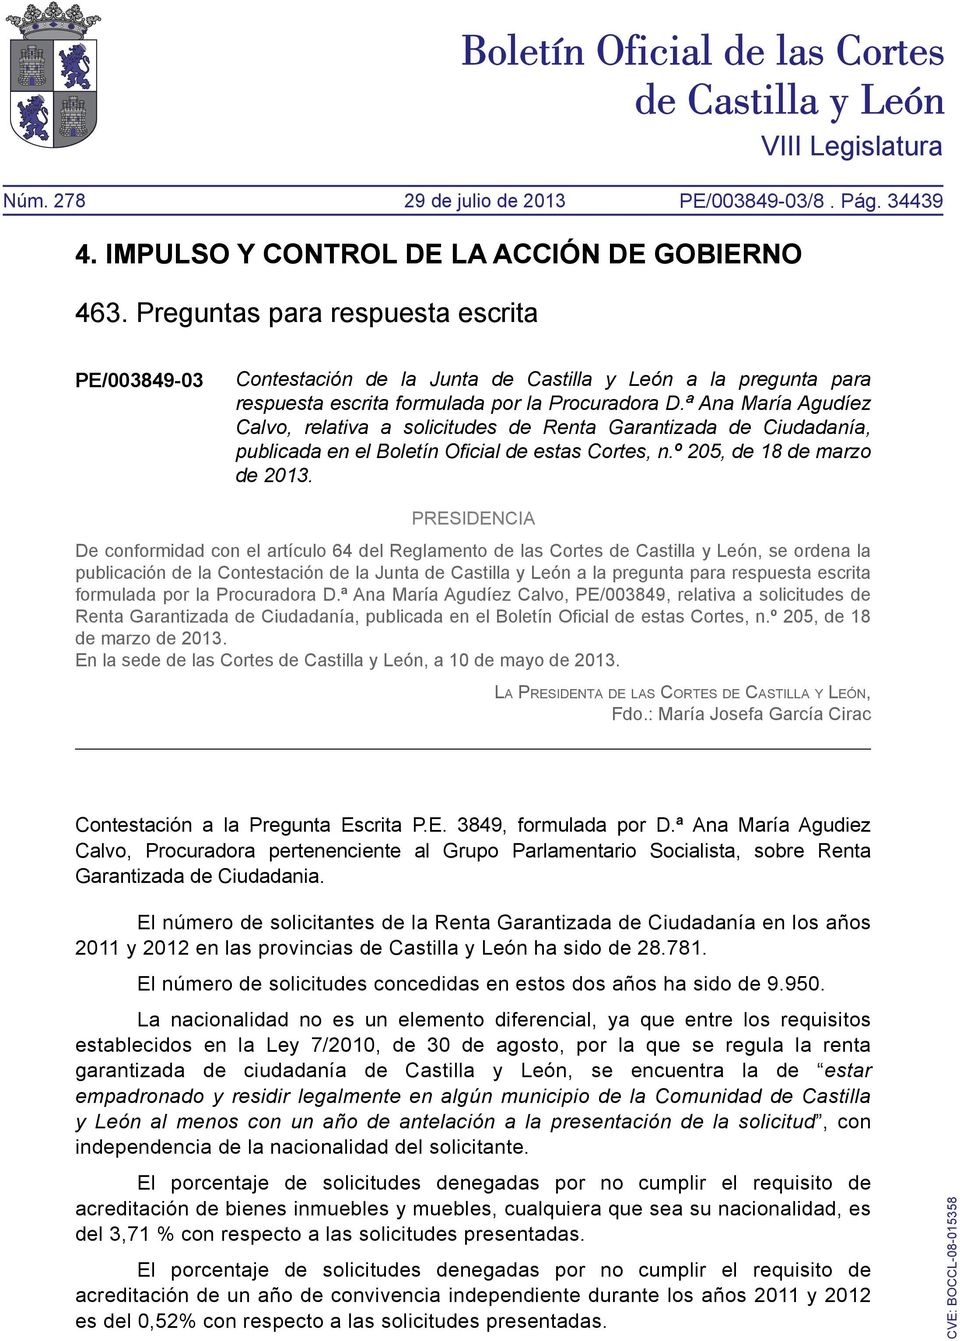 PRESIDENCIA De conformidad con el artículo 64 del Reglamento de las Cortes de Castilla y León, se ordena la publicación de la Contestación de la Junta de Castilla y León a la pregunta para respuesta